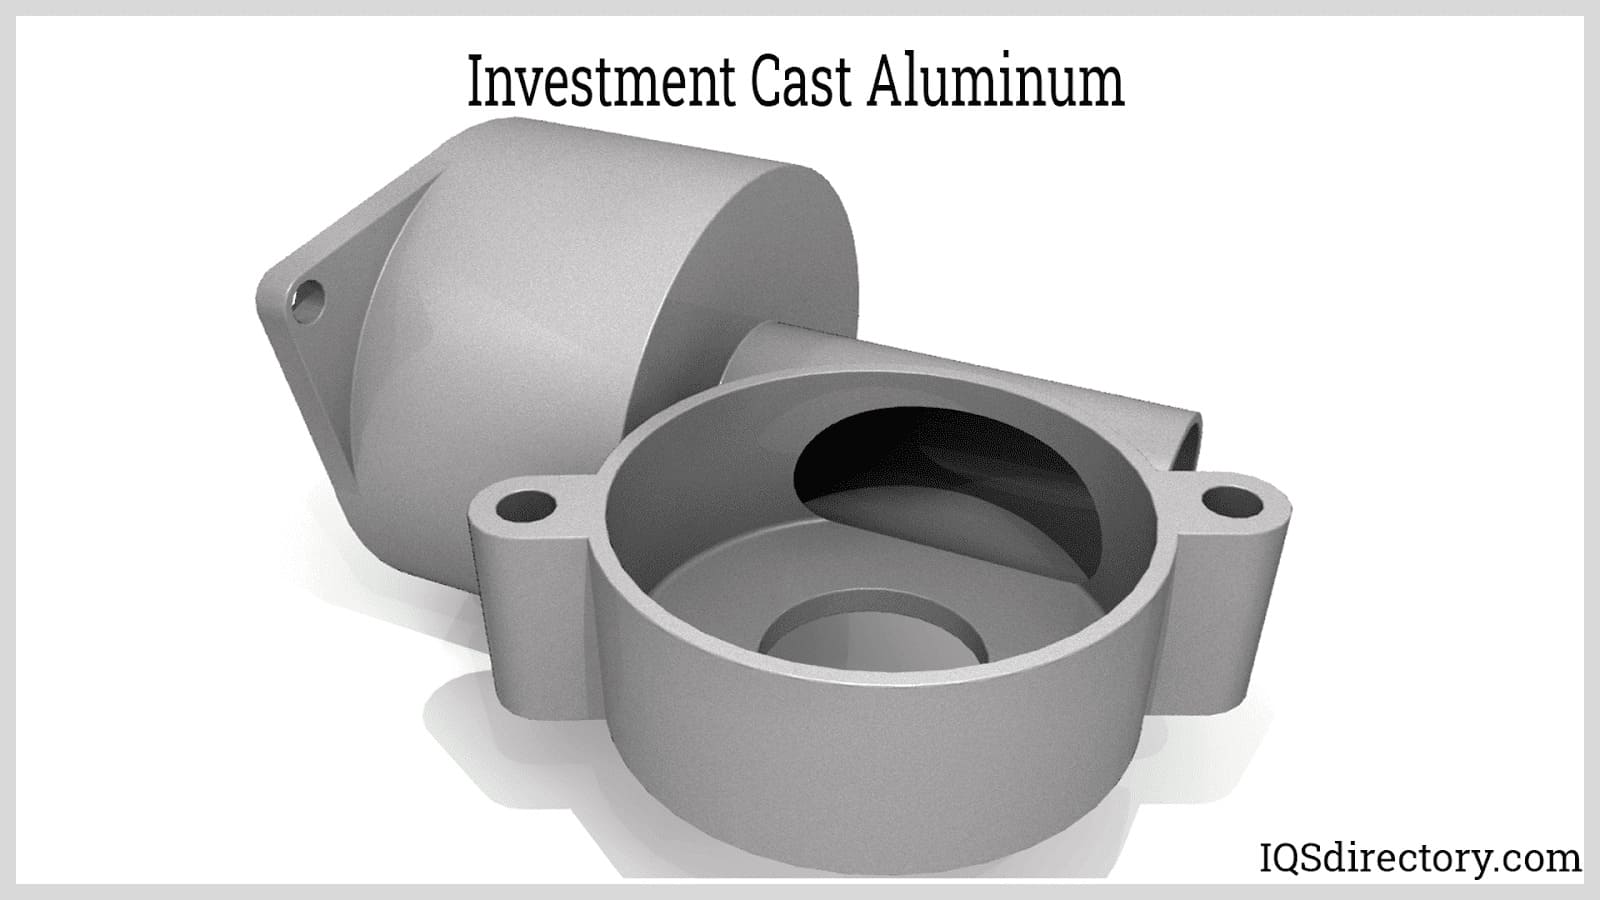 Investment Cast Aluminum